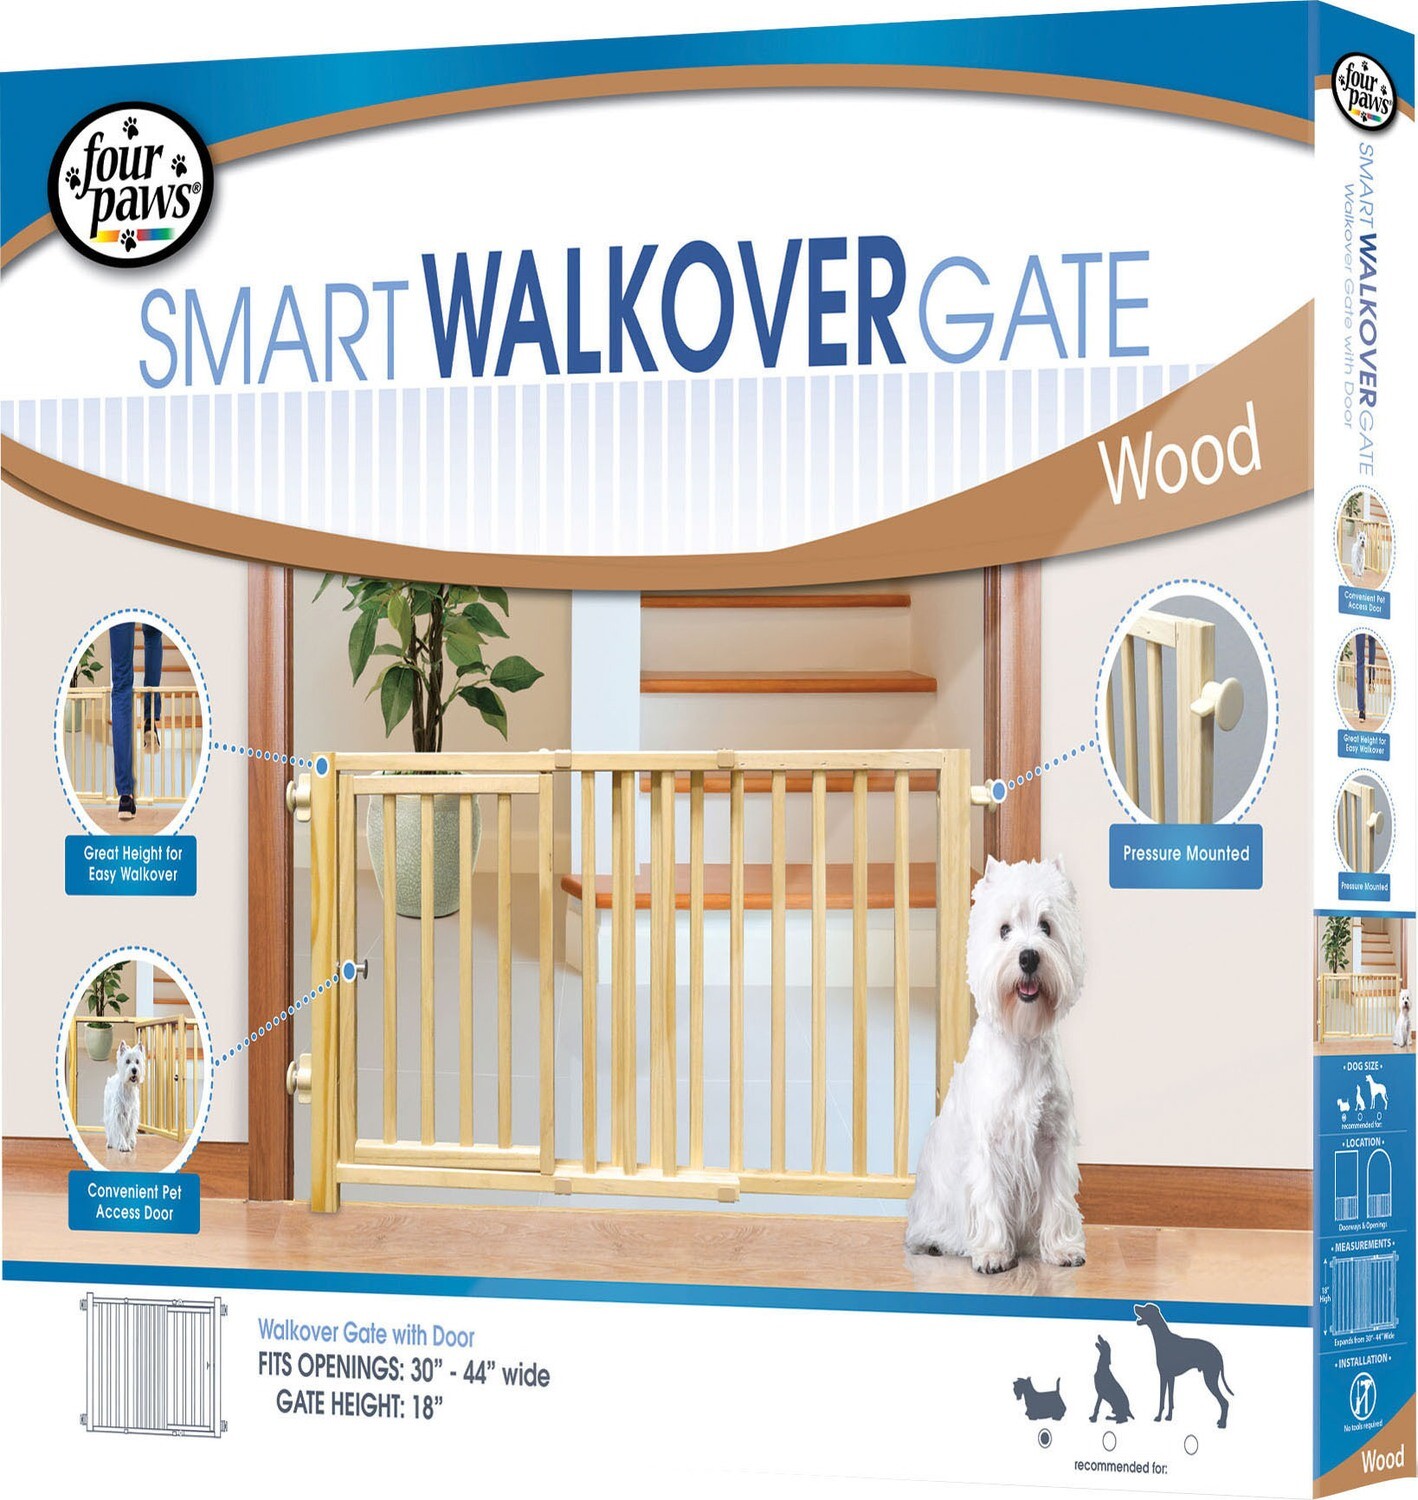 FP GATE WOOD WALK OVER W/DOOR 30-44" X 18"